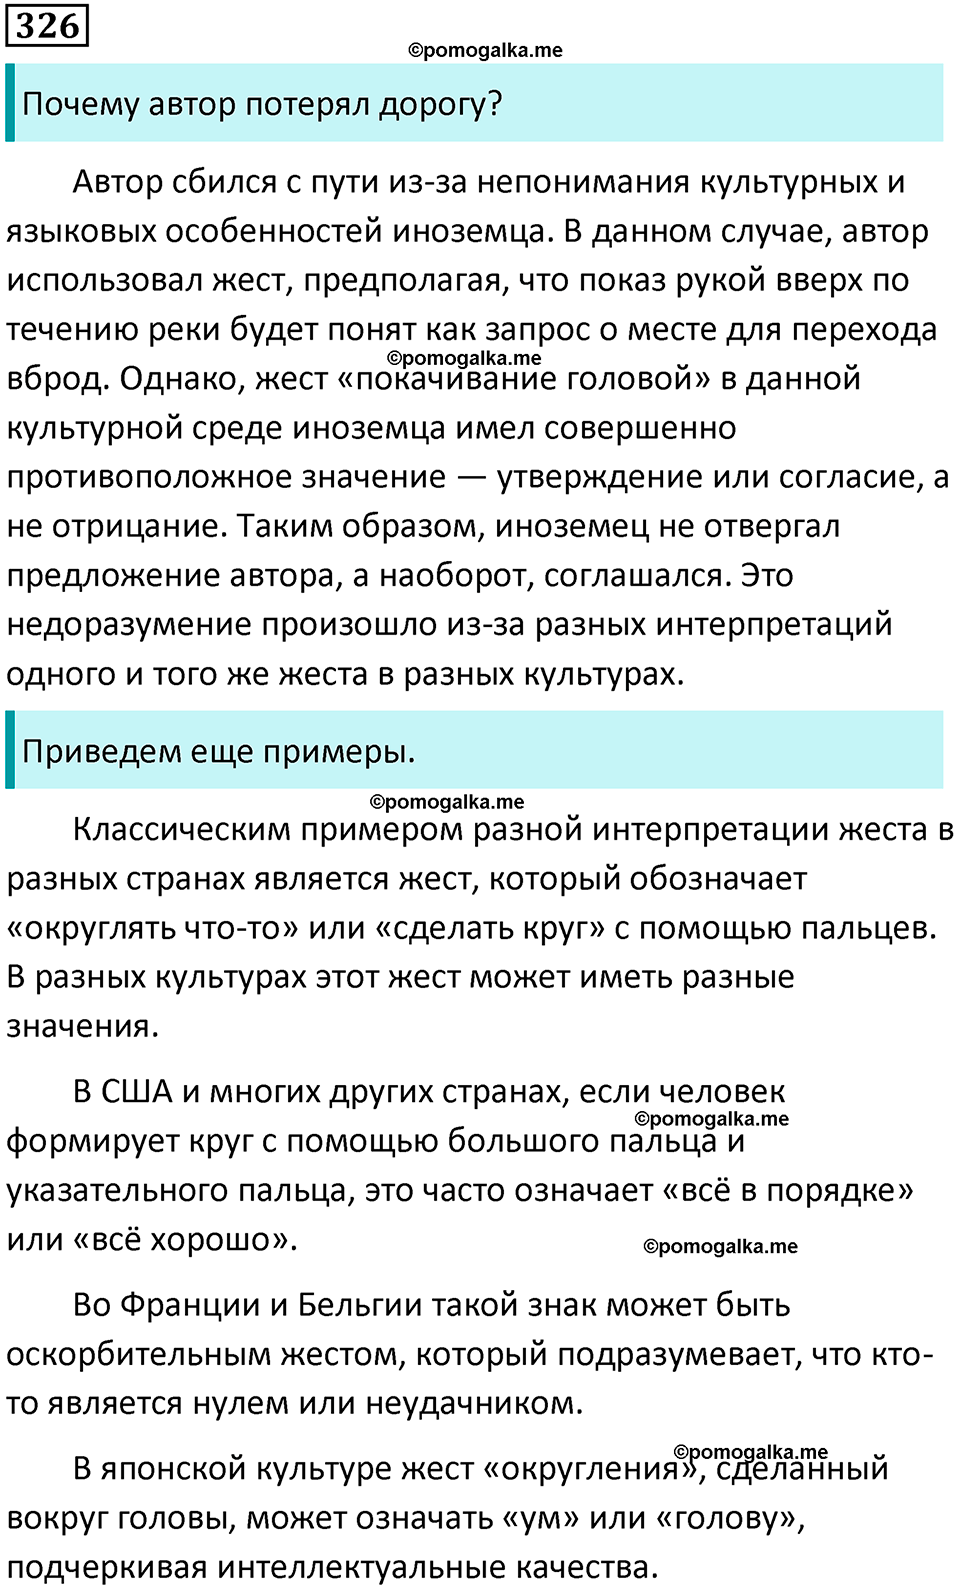 разбор упражнения №326 русский язык 8 класс Бархударов 2023 год